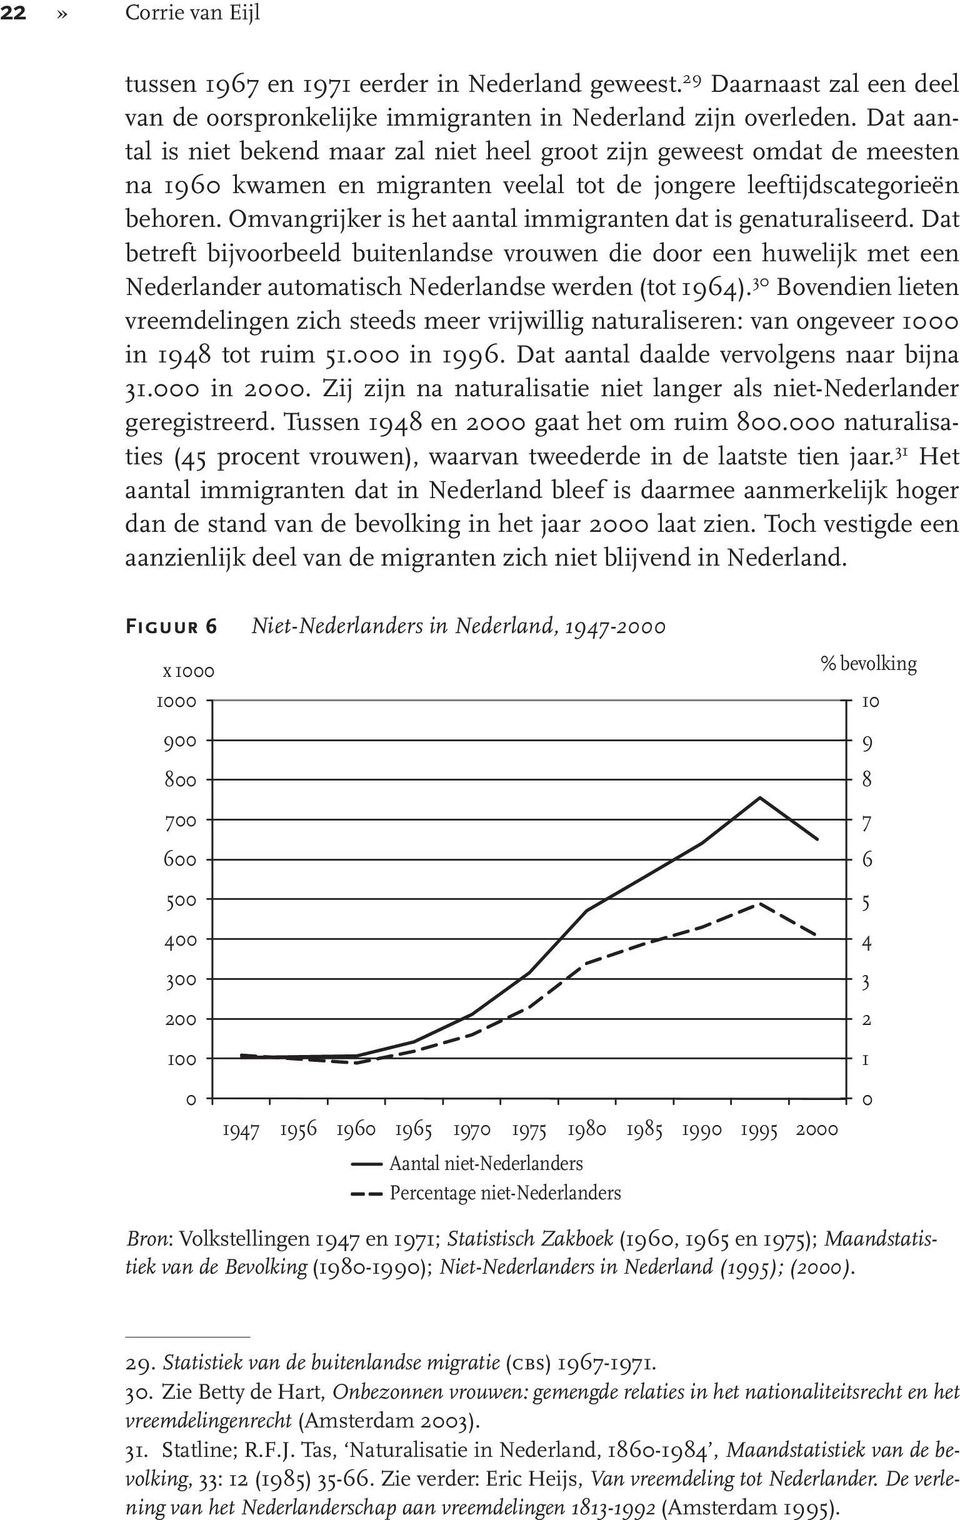 Omvangrijker is het aantal immigranten dat is genaturaliseerd. Dat betreft bijvoorbeeld buitenlandse vrouwen die door een huwelijk met een Nederlander automatisch Nederlandse werden (tot 1964).